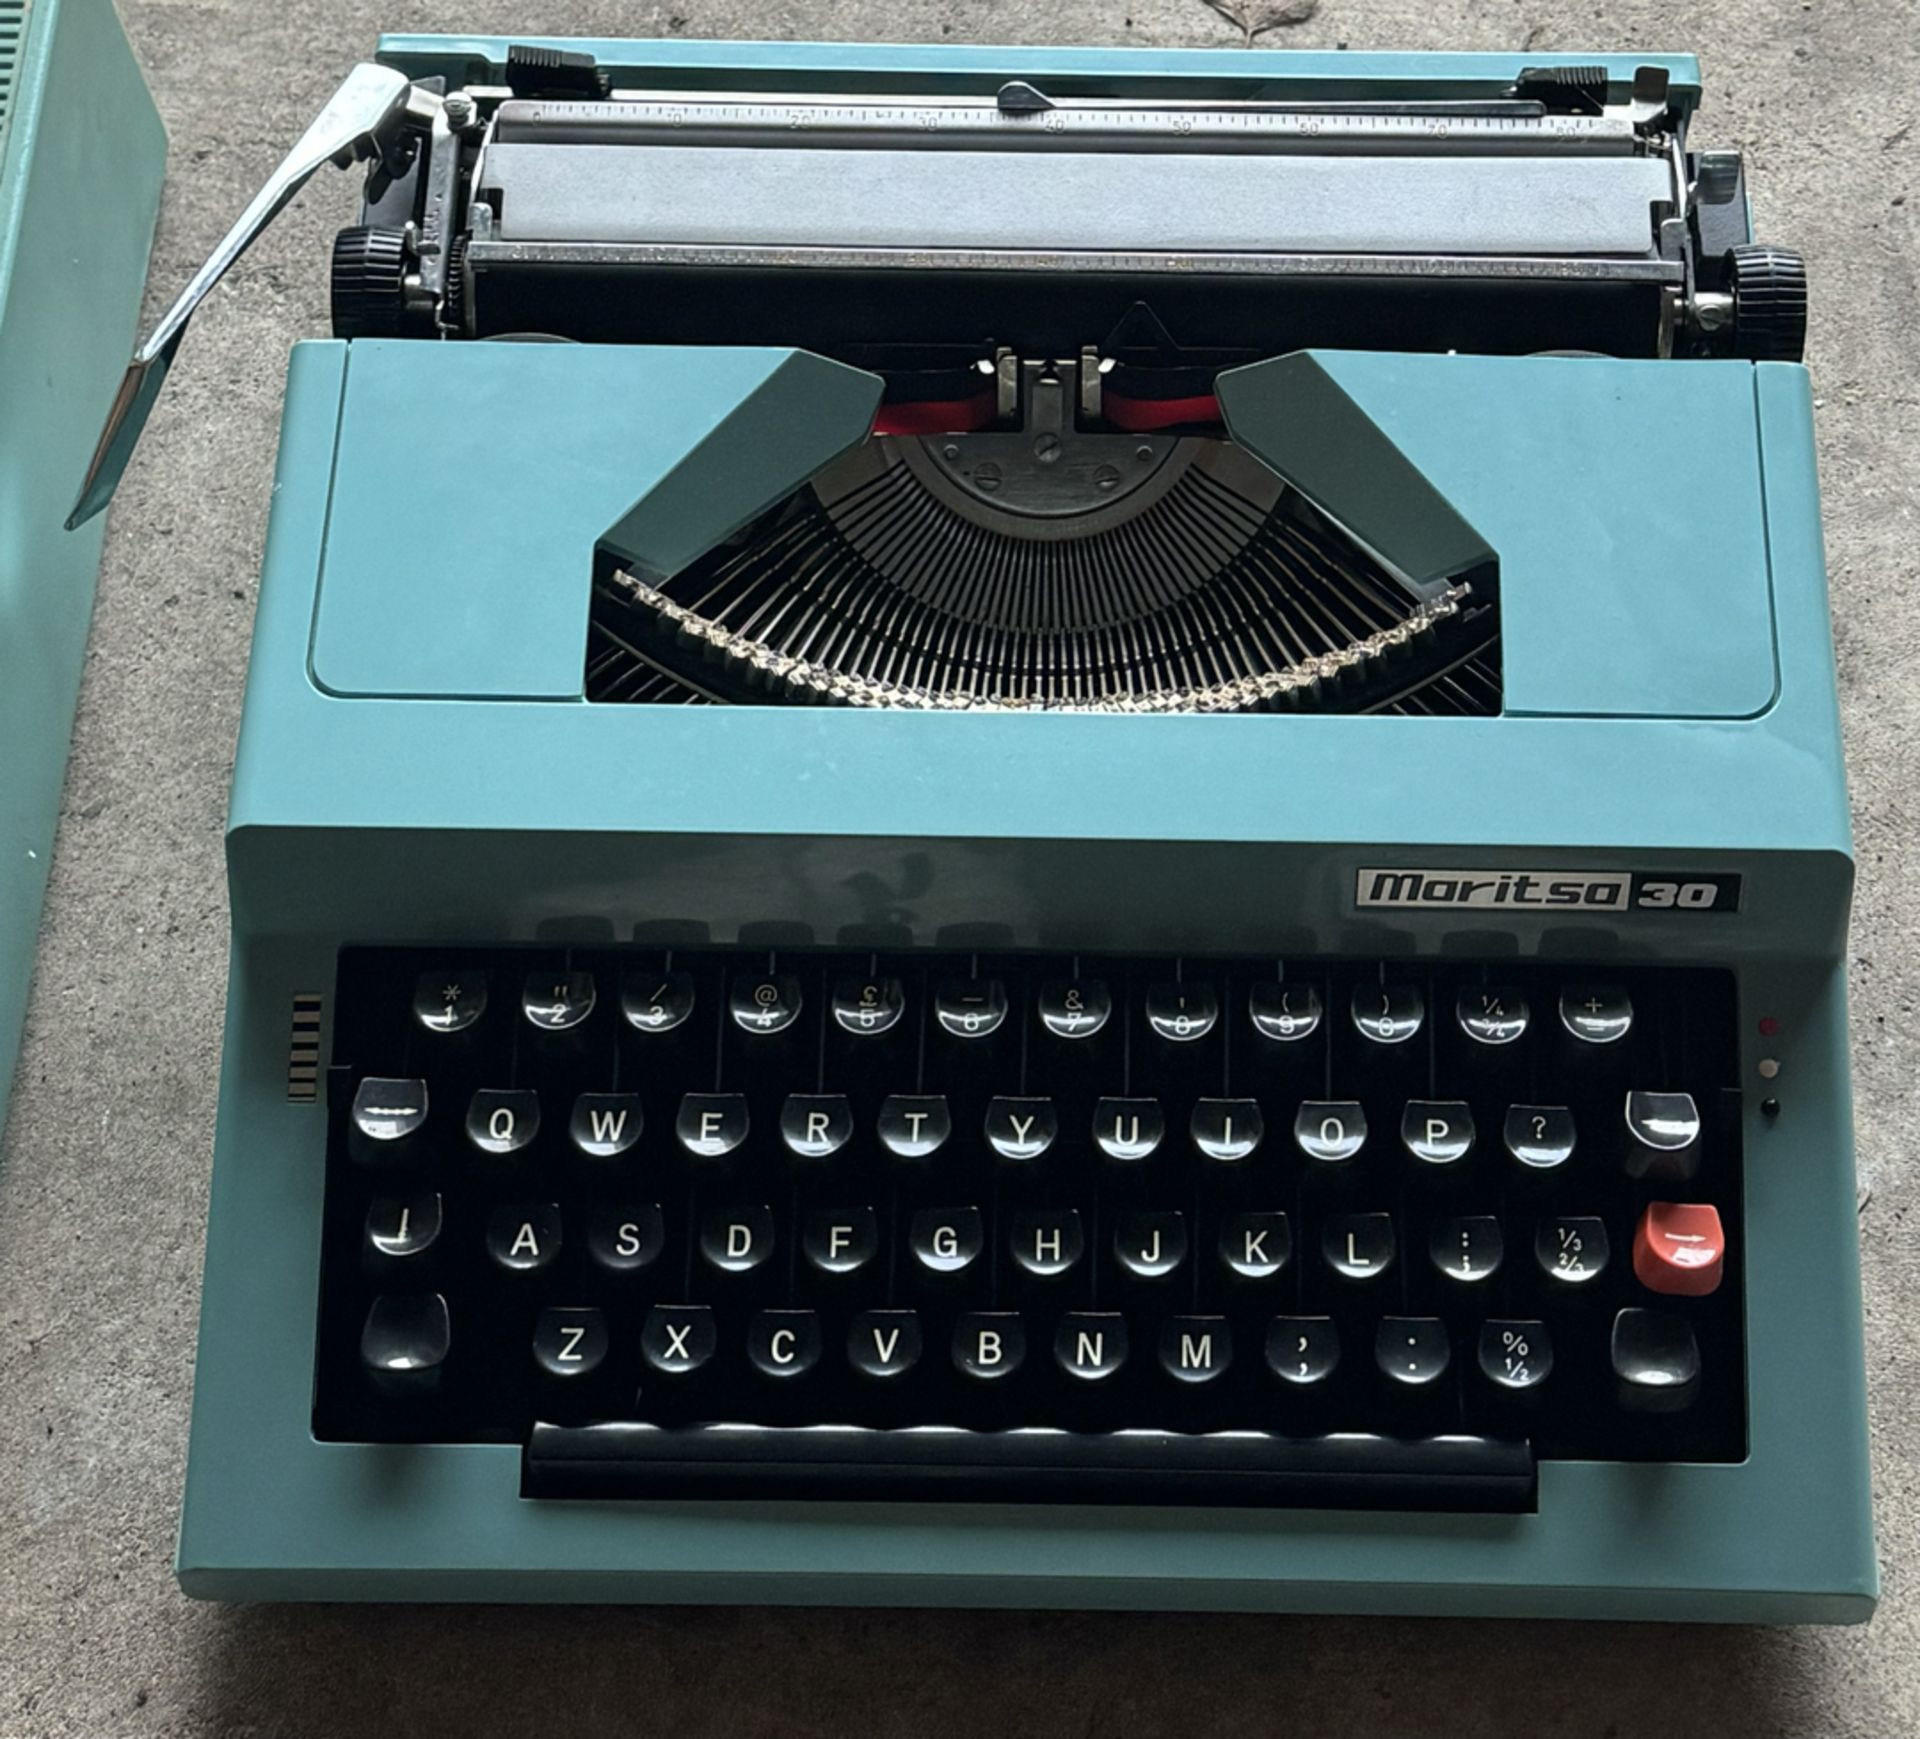 Vintage Blue Maritsa 30 Portable Typewriter in Case - Workshop Find, Untested - Image 2 of 3